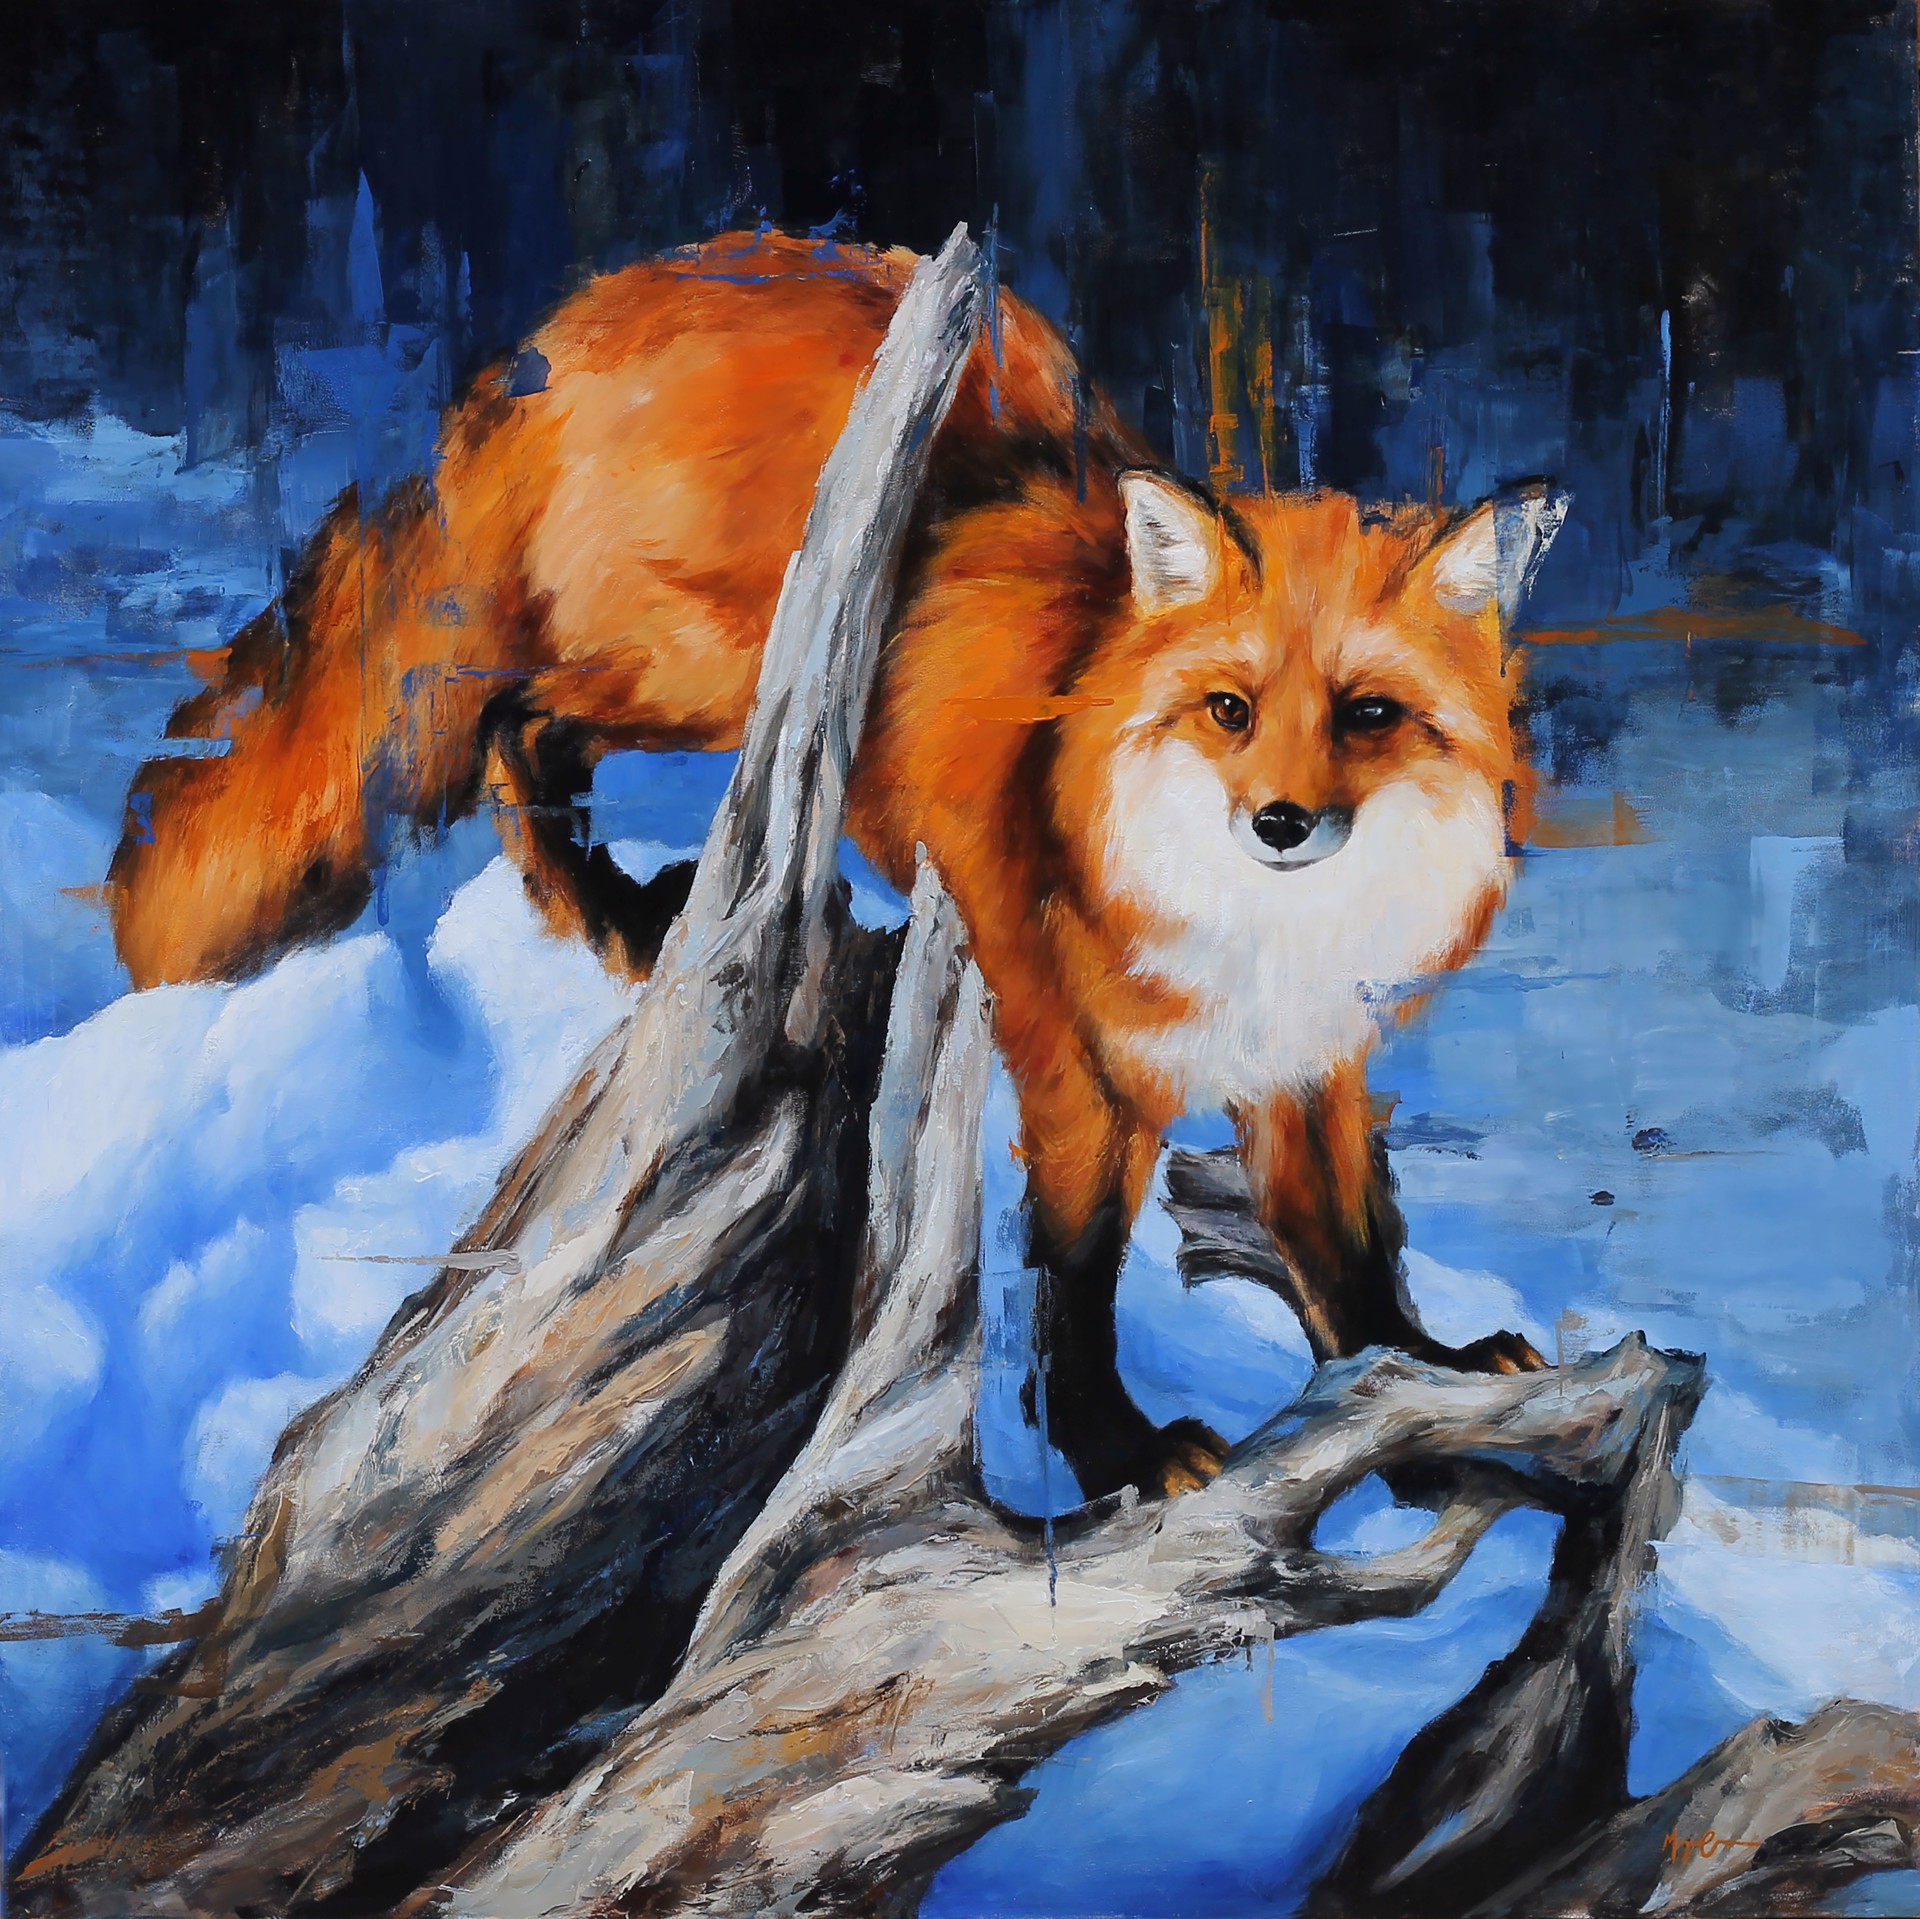 Winter Fox, 2020 by Morgan Cameron